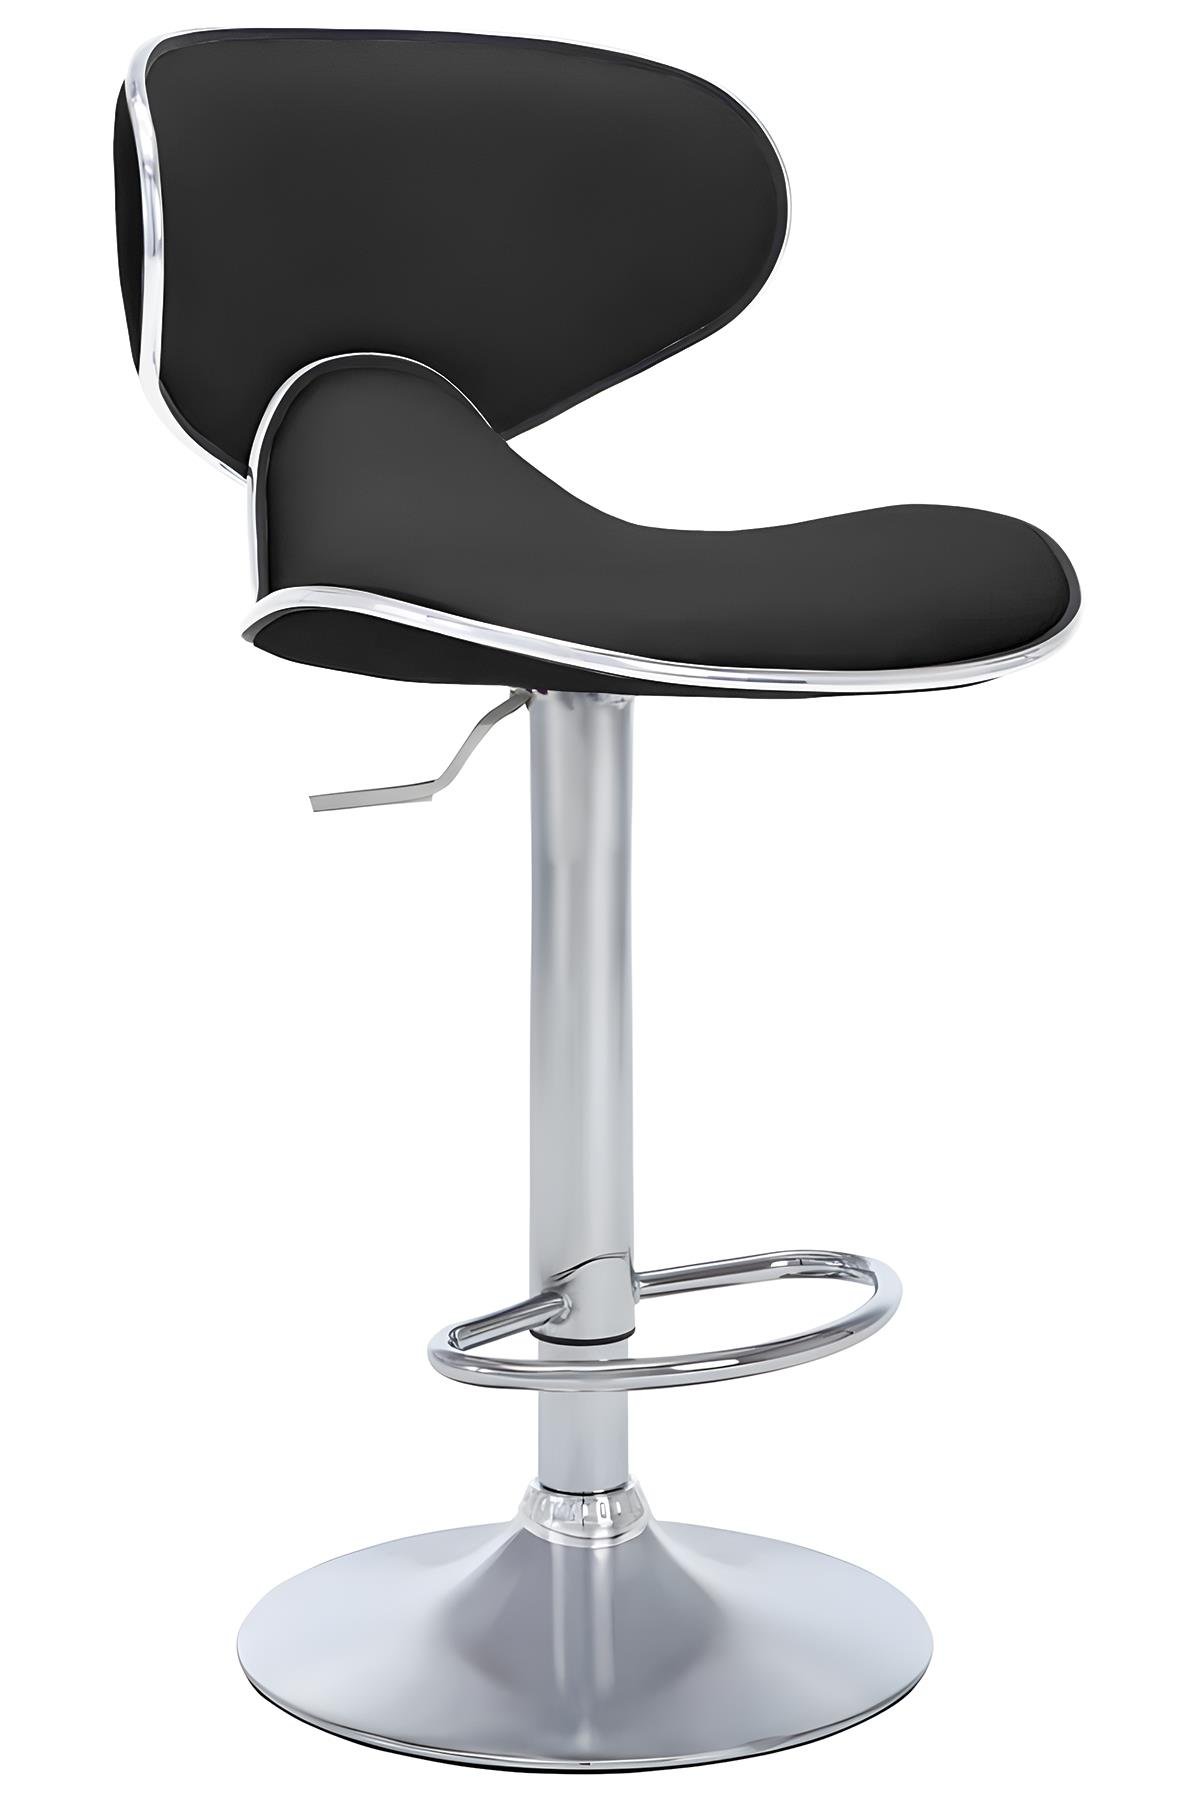 Bürocci Zen Bar Taburesi - Siyah Modern Deri Metal Ayaklı Yüksek Tezgah  Sandalyesi - 9549S0481